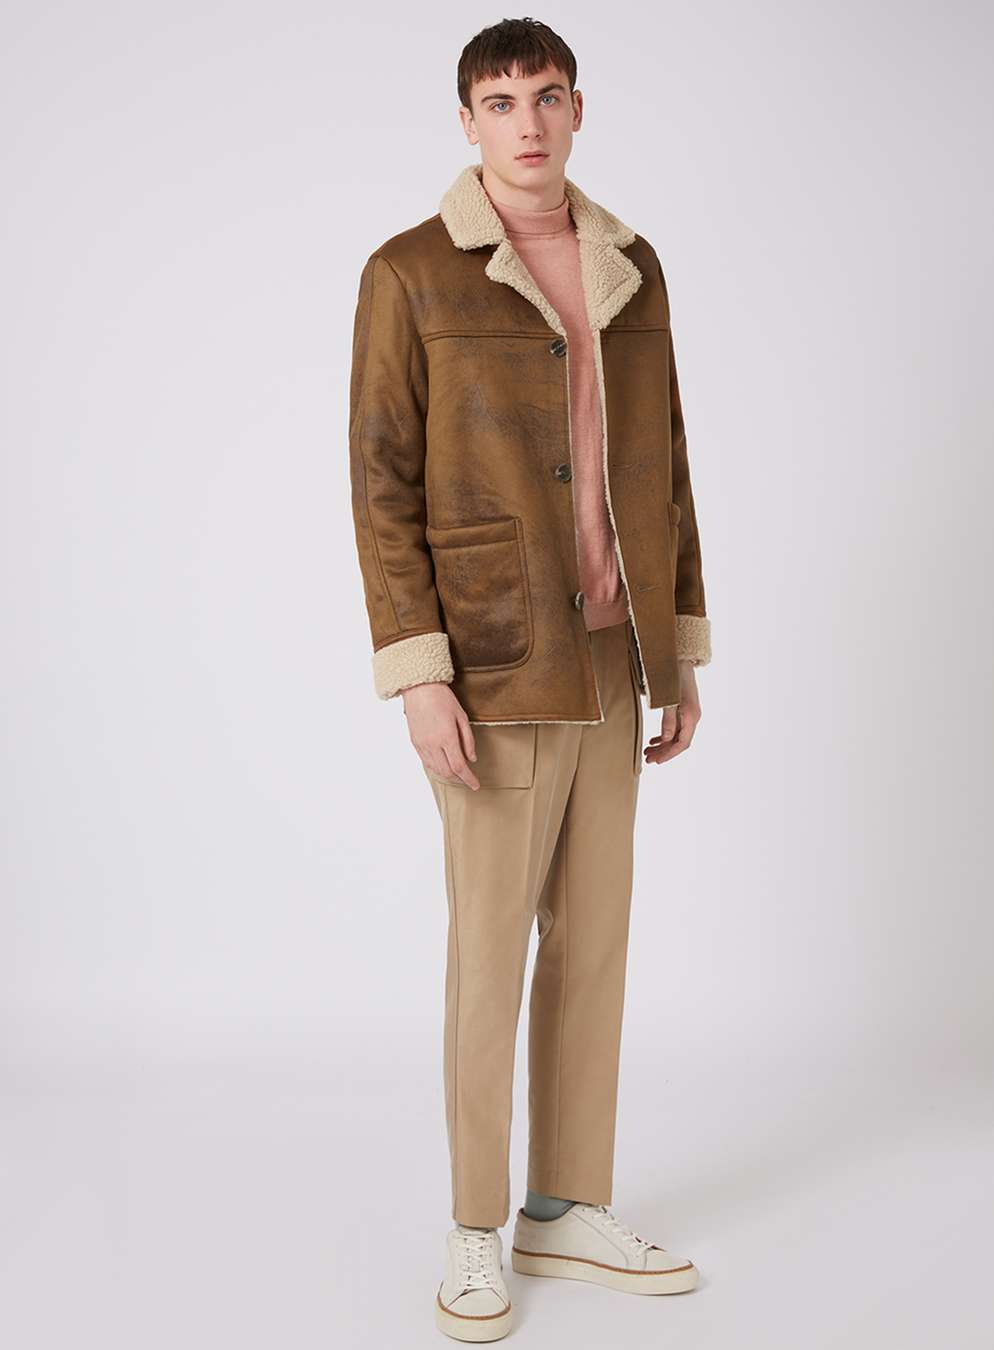 camel faux shearling coat - coats u0026 jackets - clothing - topman usa GGXZAUE